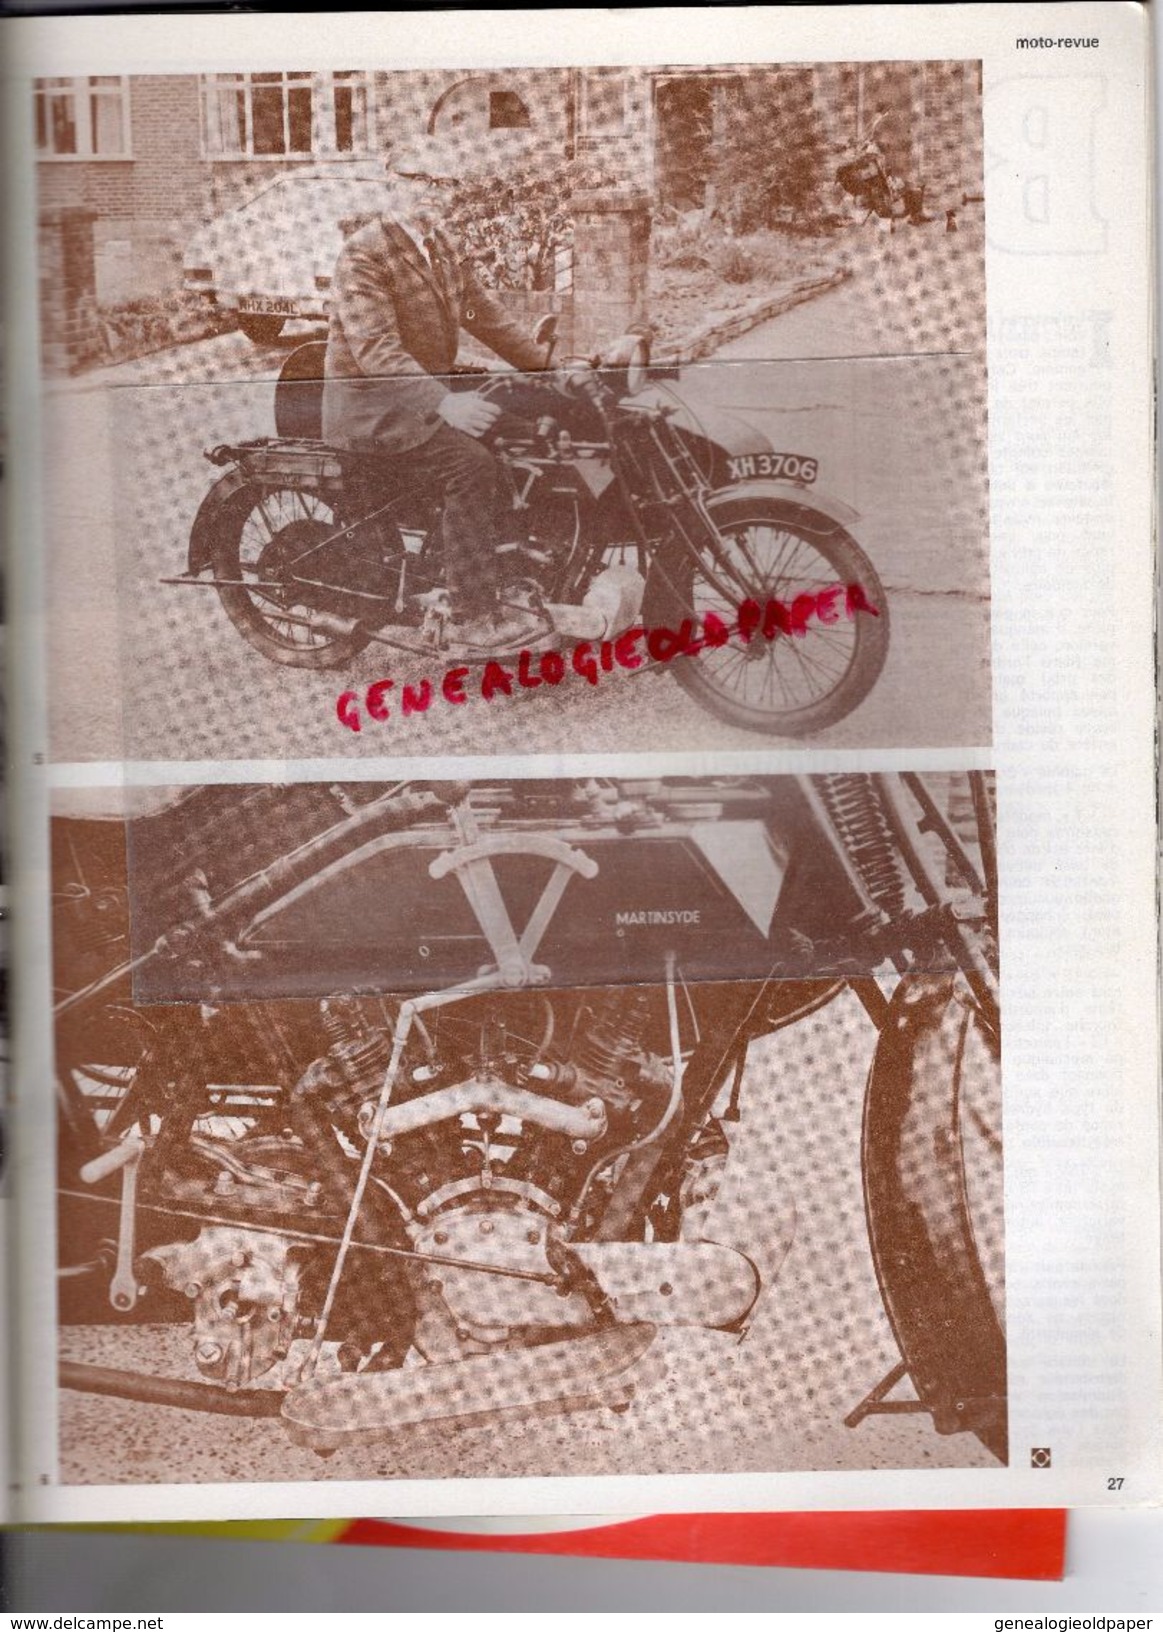 MOTO REVUE -N° 2125-18-5-1973-ESSAI LAVERDA 750 SF-TOUR DE FRANCE-HOCKENHEIM READ-MARLBORO-NOGARO-DOUGLAS 600-GILERA - Moto